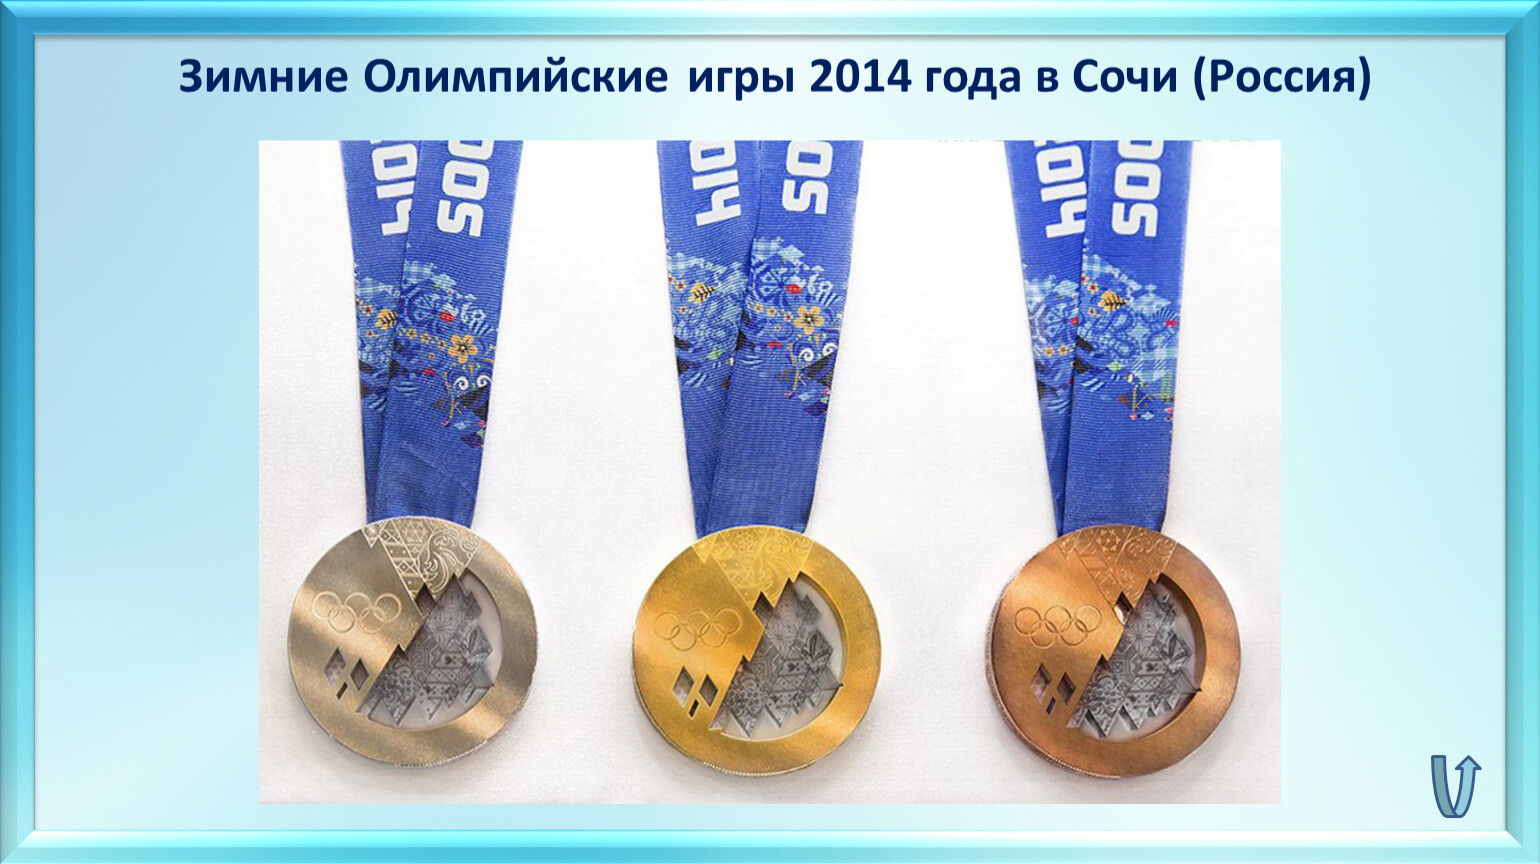 Олимпийская медаль 2014 года. Медали Олимпийских игр 2014. Медали Сочи 2014. Олимпийские медали Сочи.